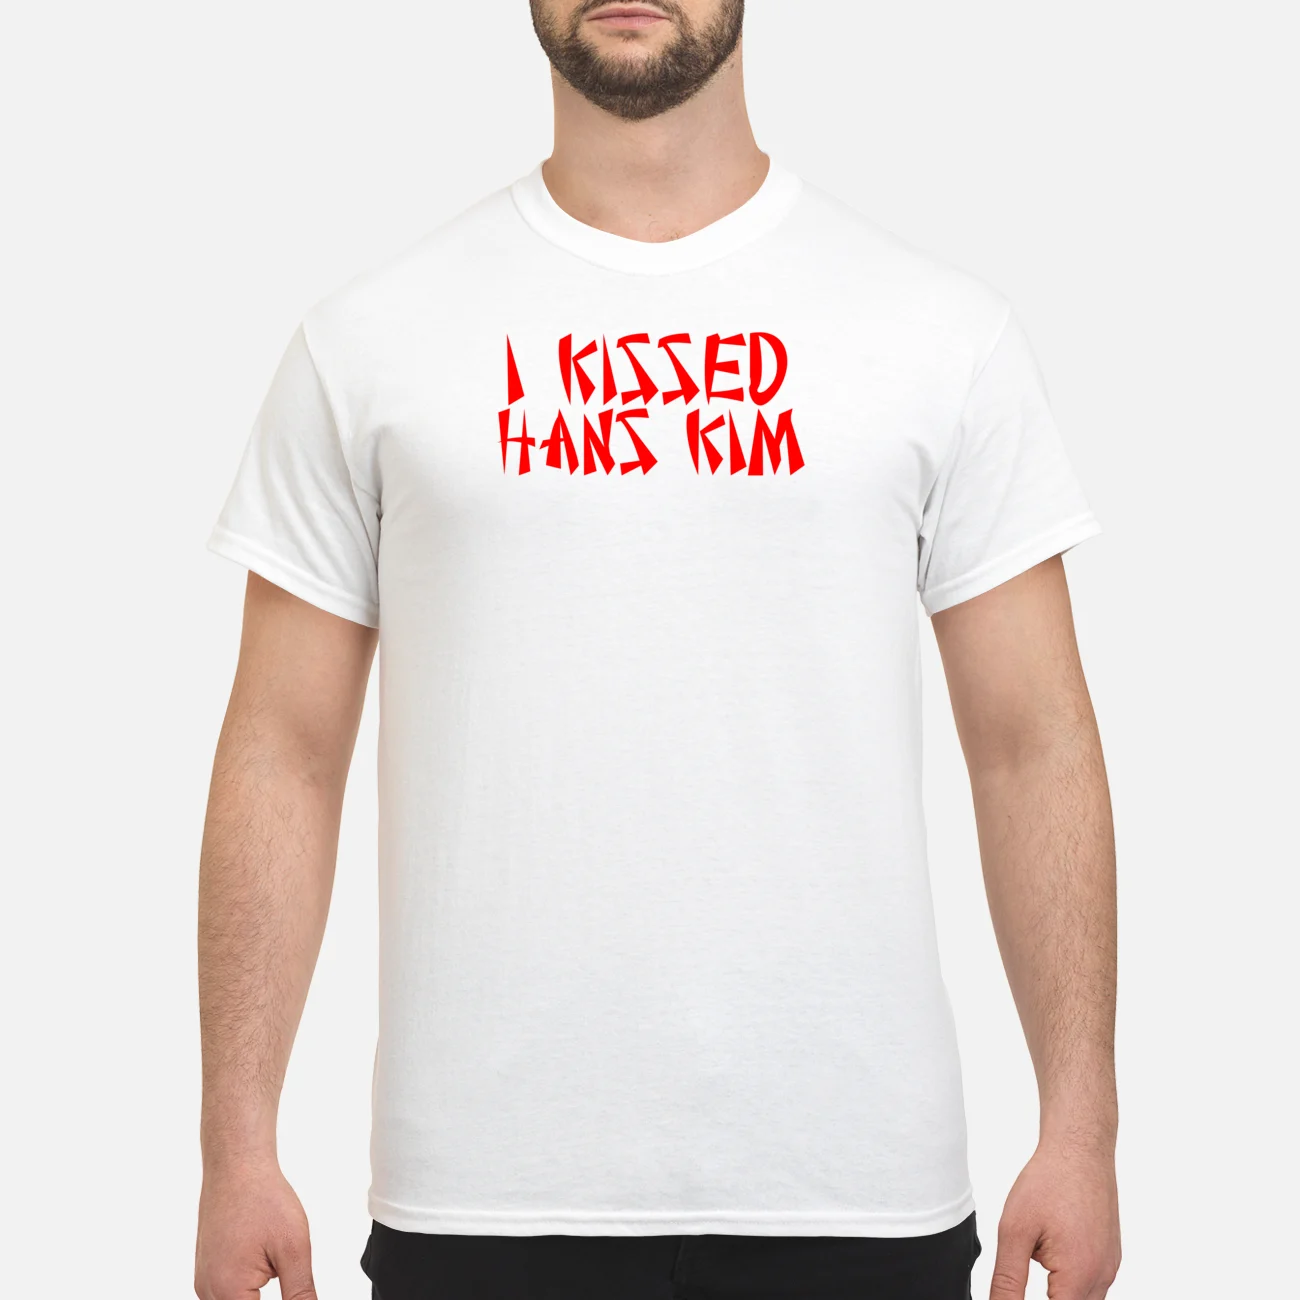 I Kissed Hans Kim Shirt